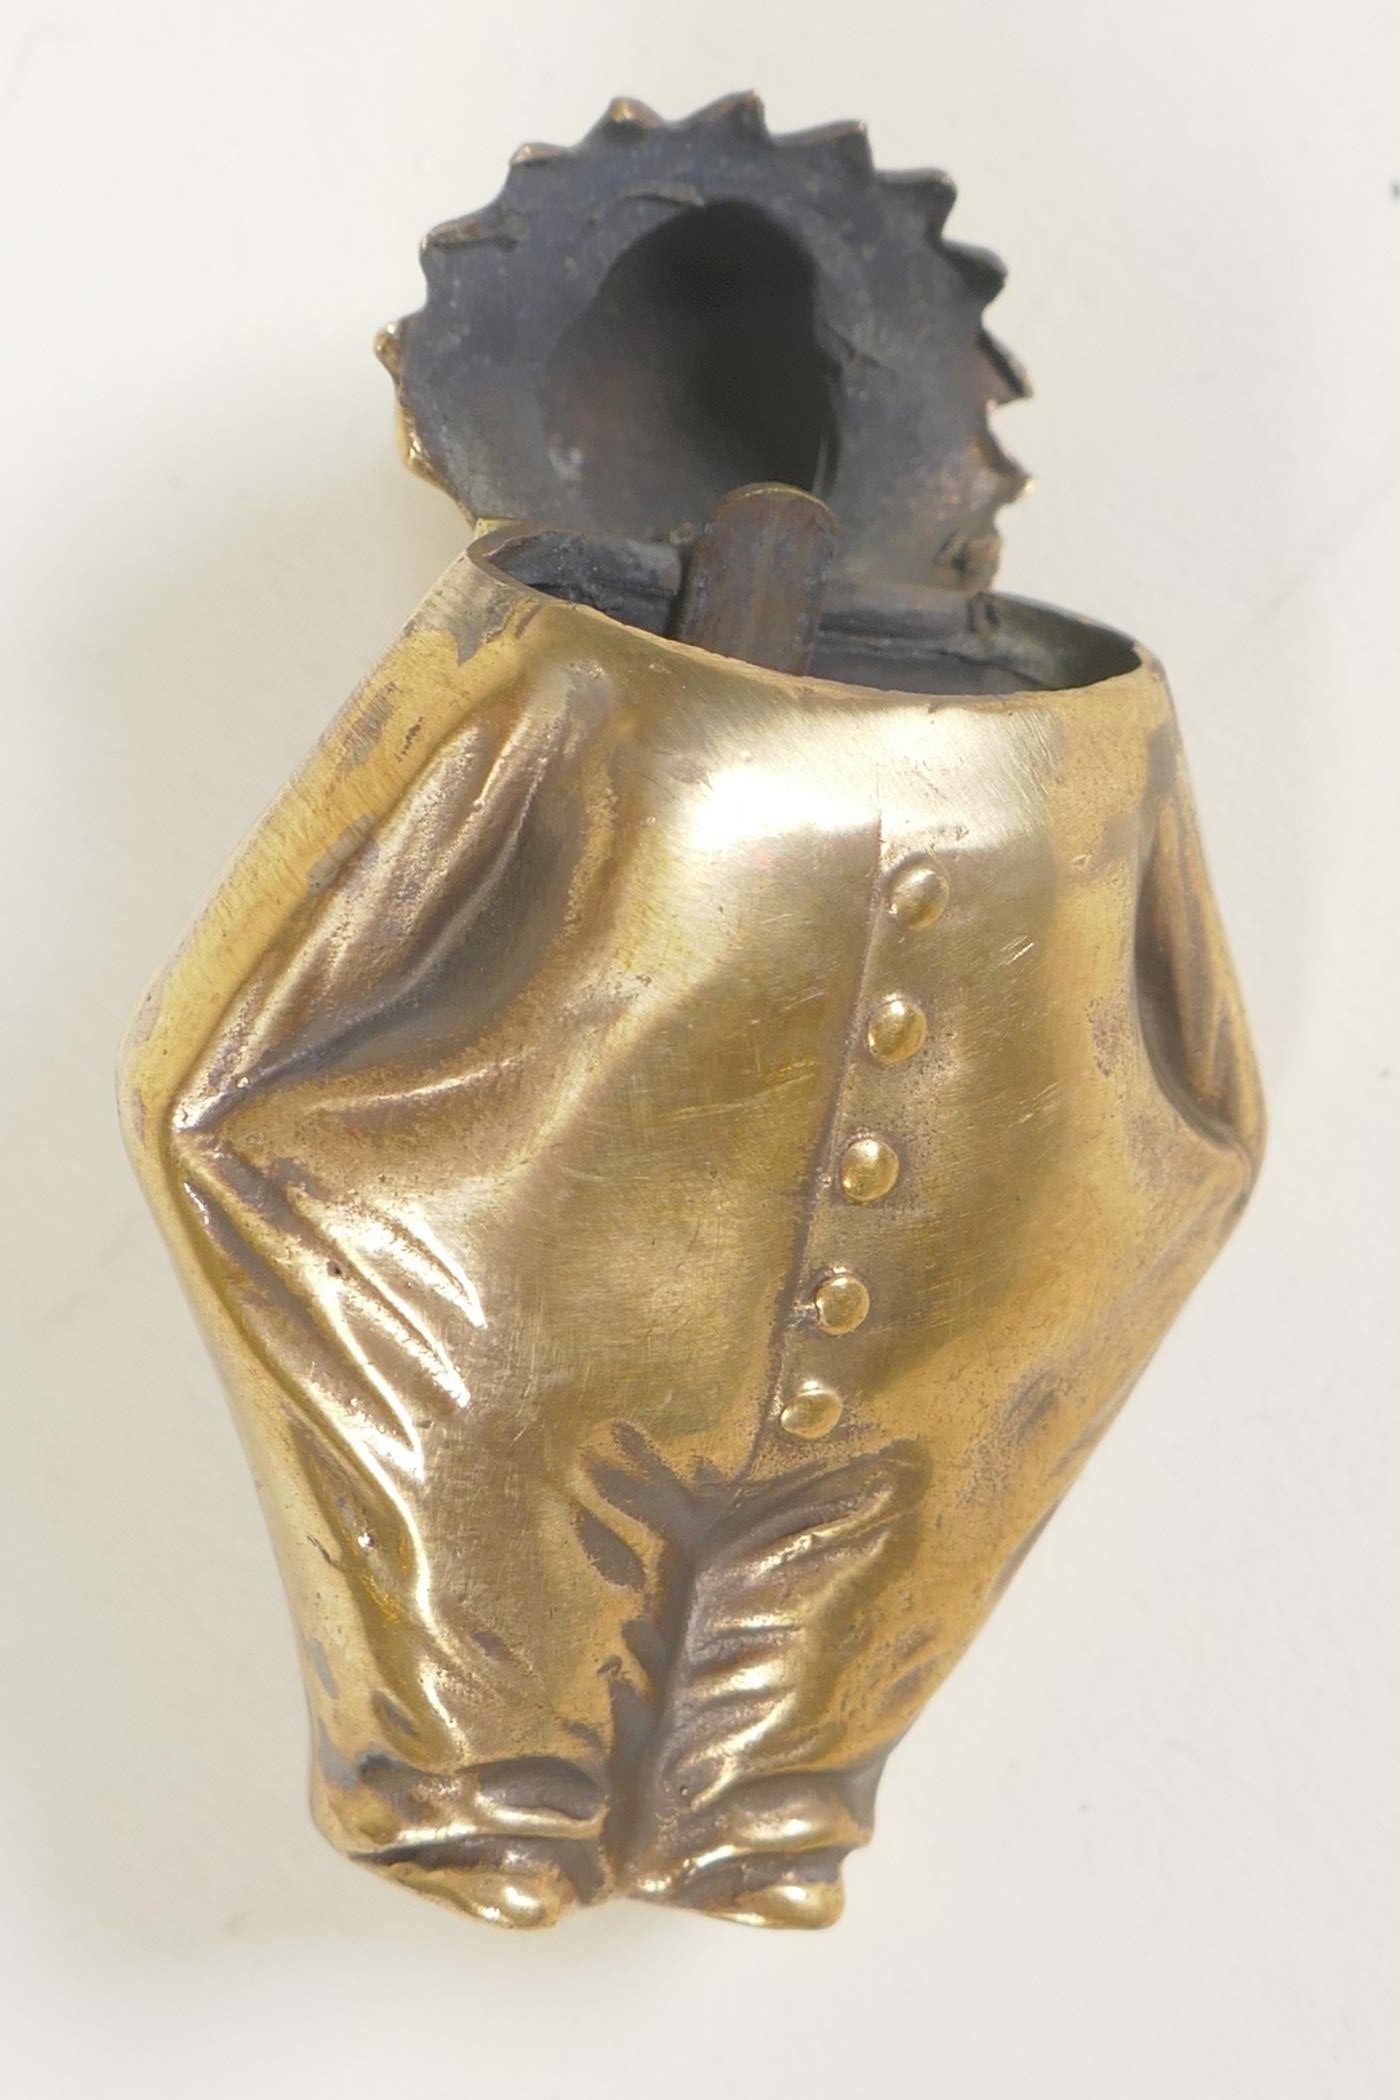 A brass vesta case, 2" long - Image 3 of 3